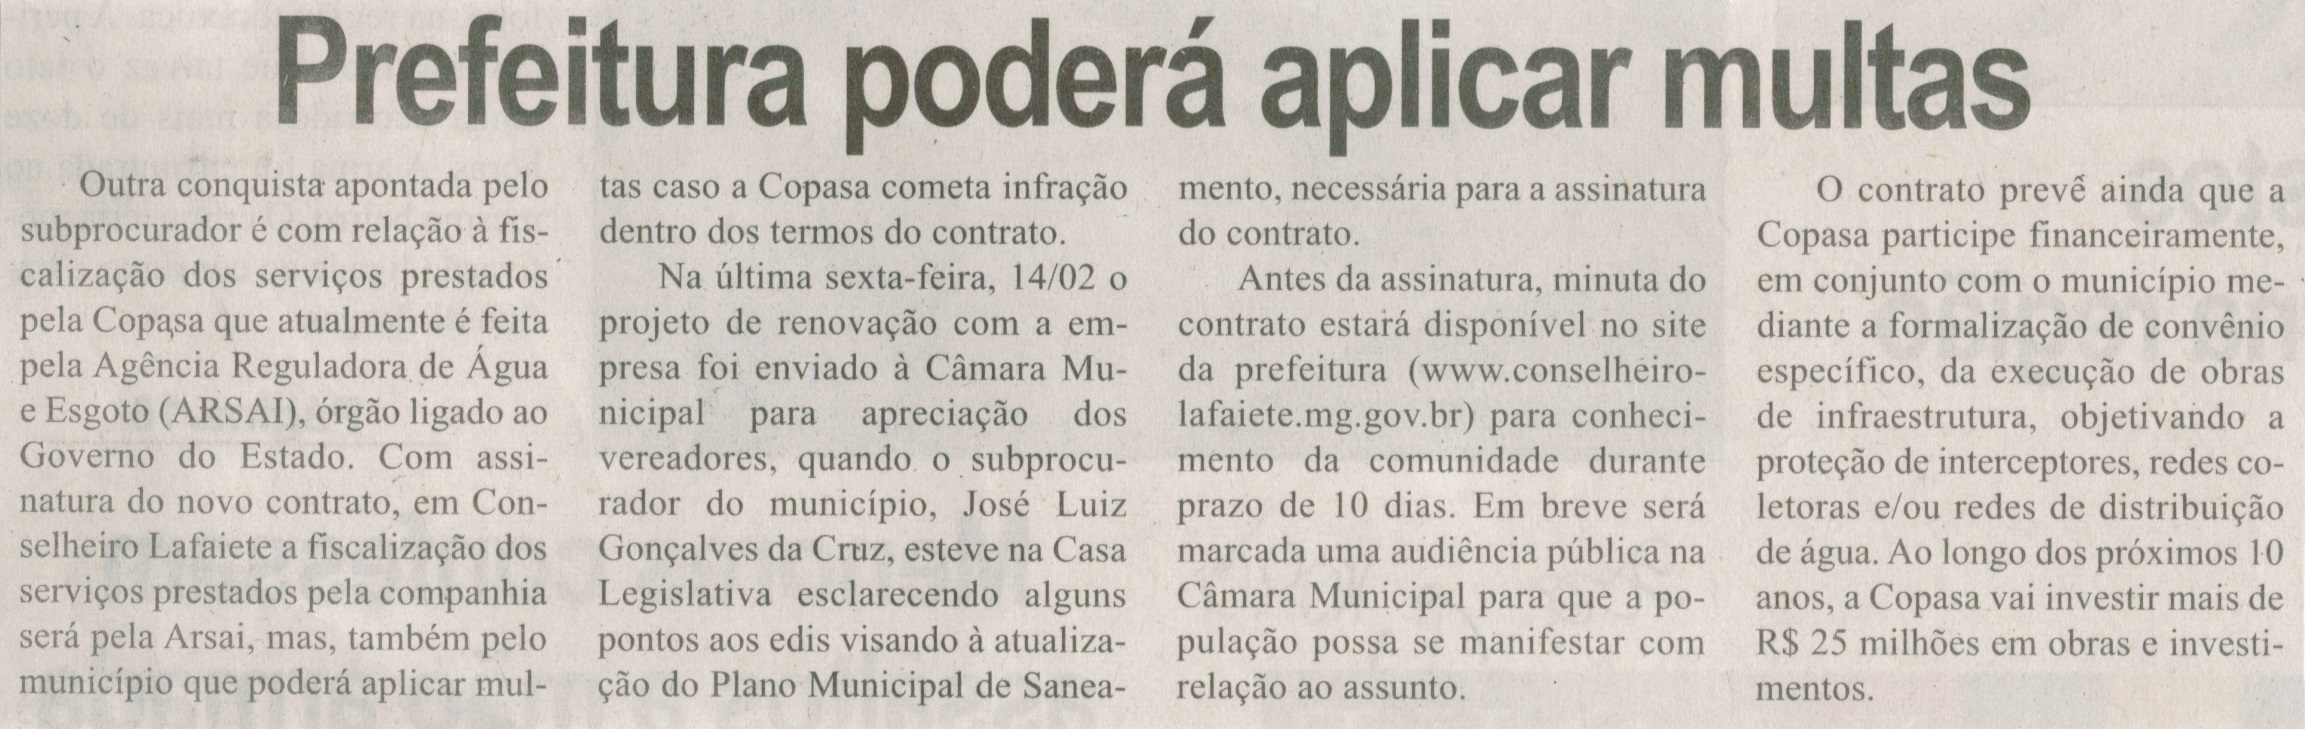 Prefeitura poderá aplicar multas. Correio de Minas, Conselheiro Lafaiete,  22 fev. 2014, p. 2.